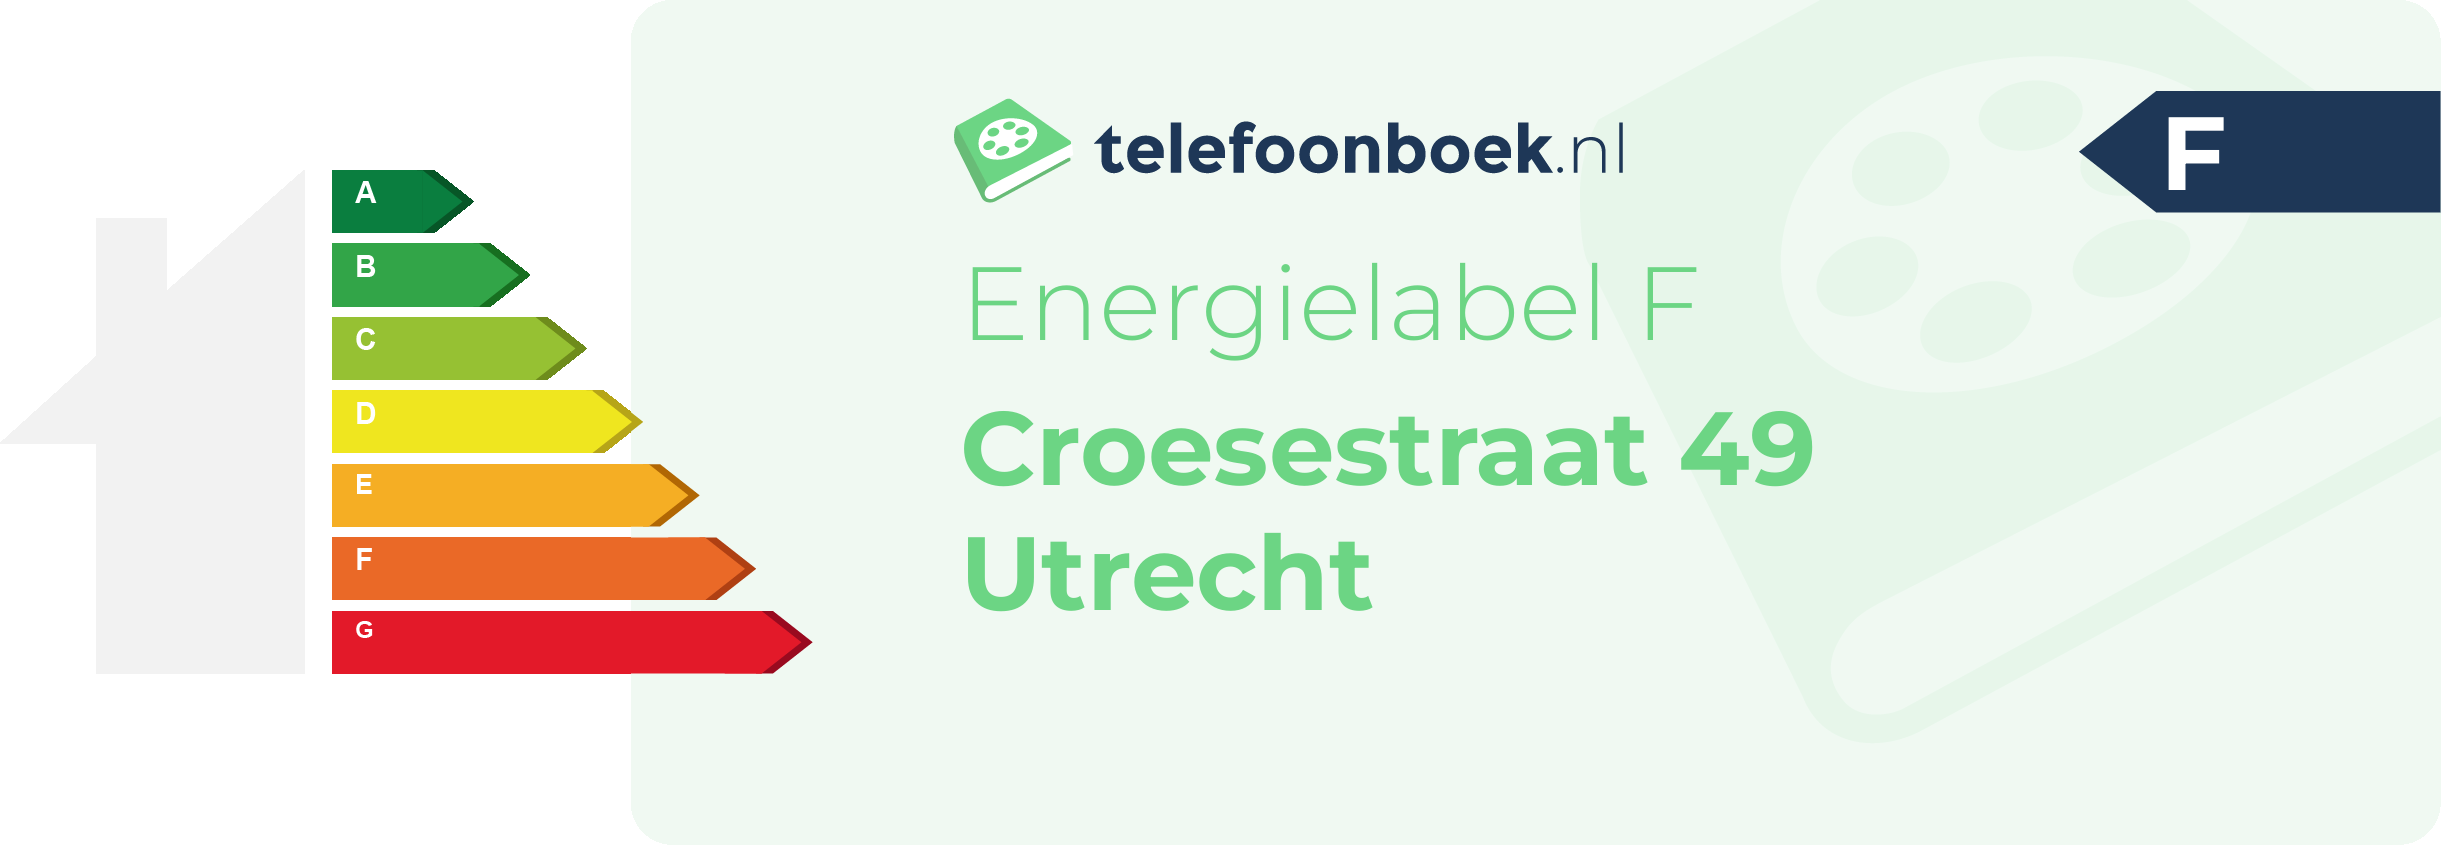 Energielabel Croesestraat 49 Utrecht